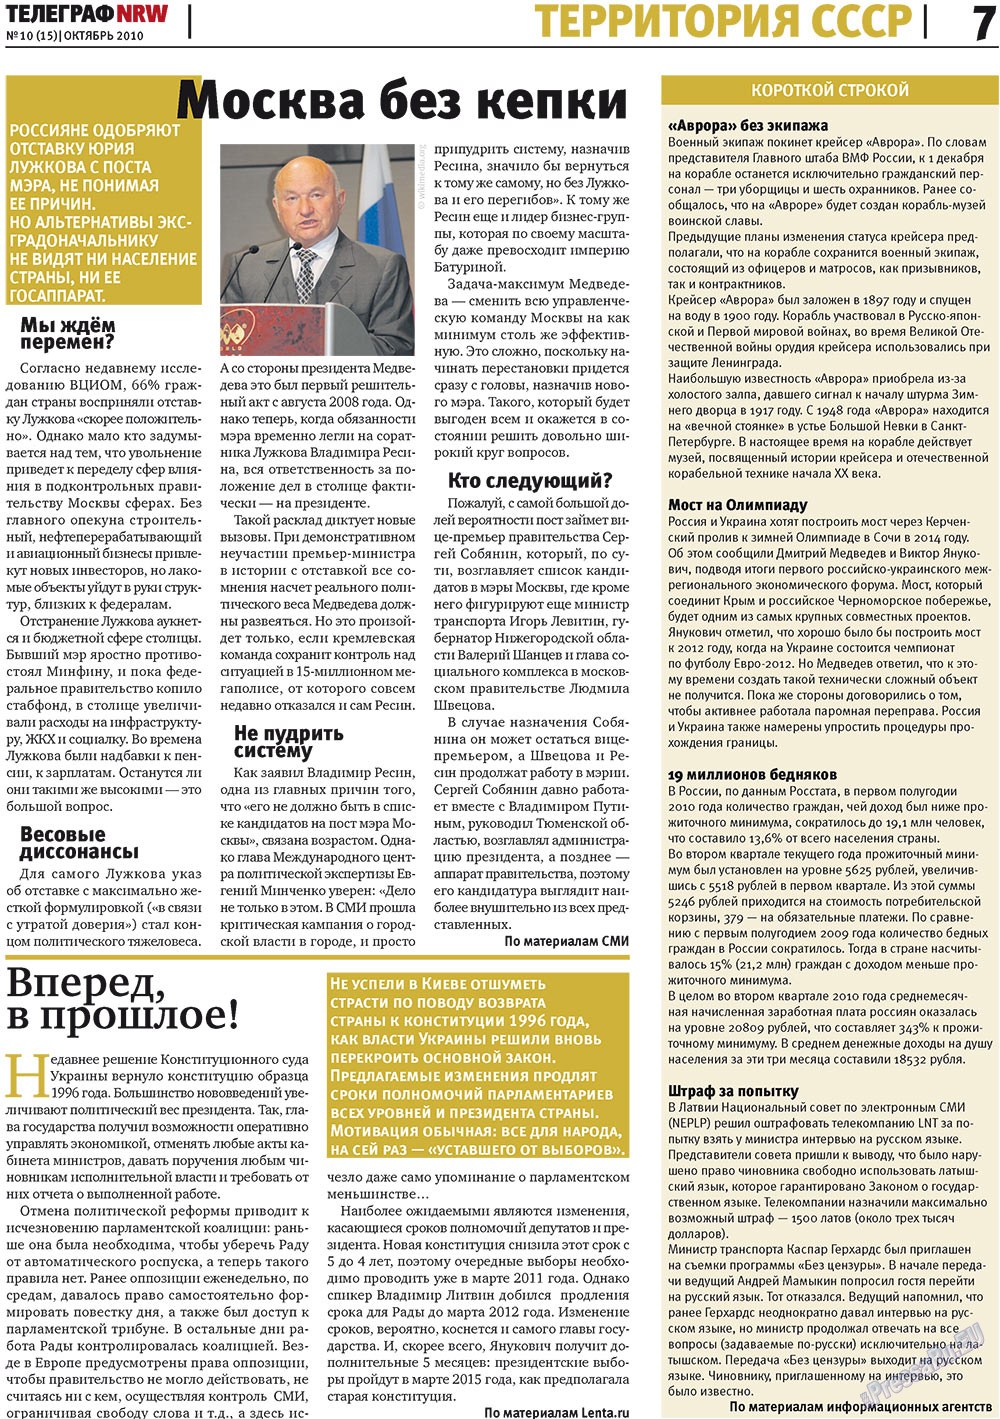 Телеграф NRW (газета). 2010 год, номер 10, стр. 7